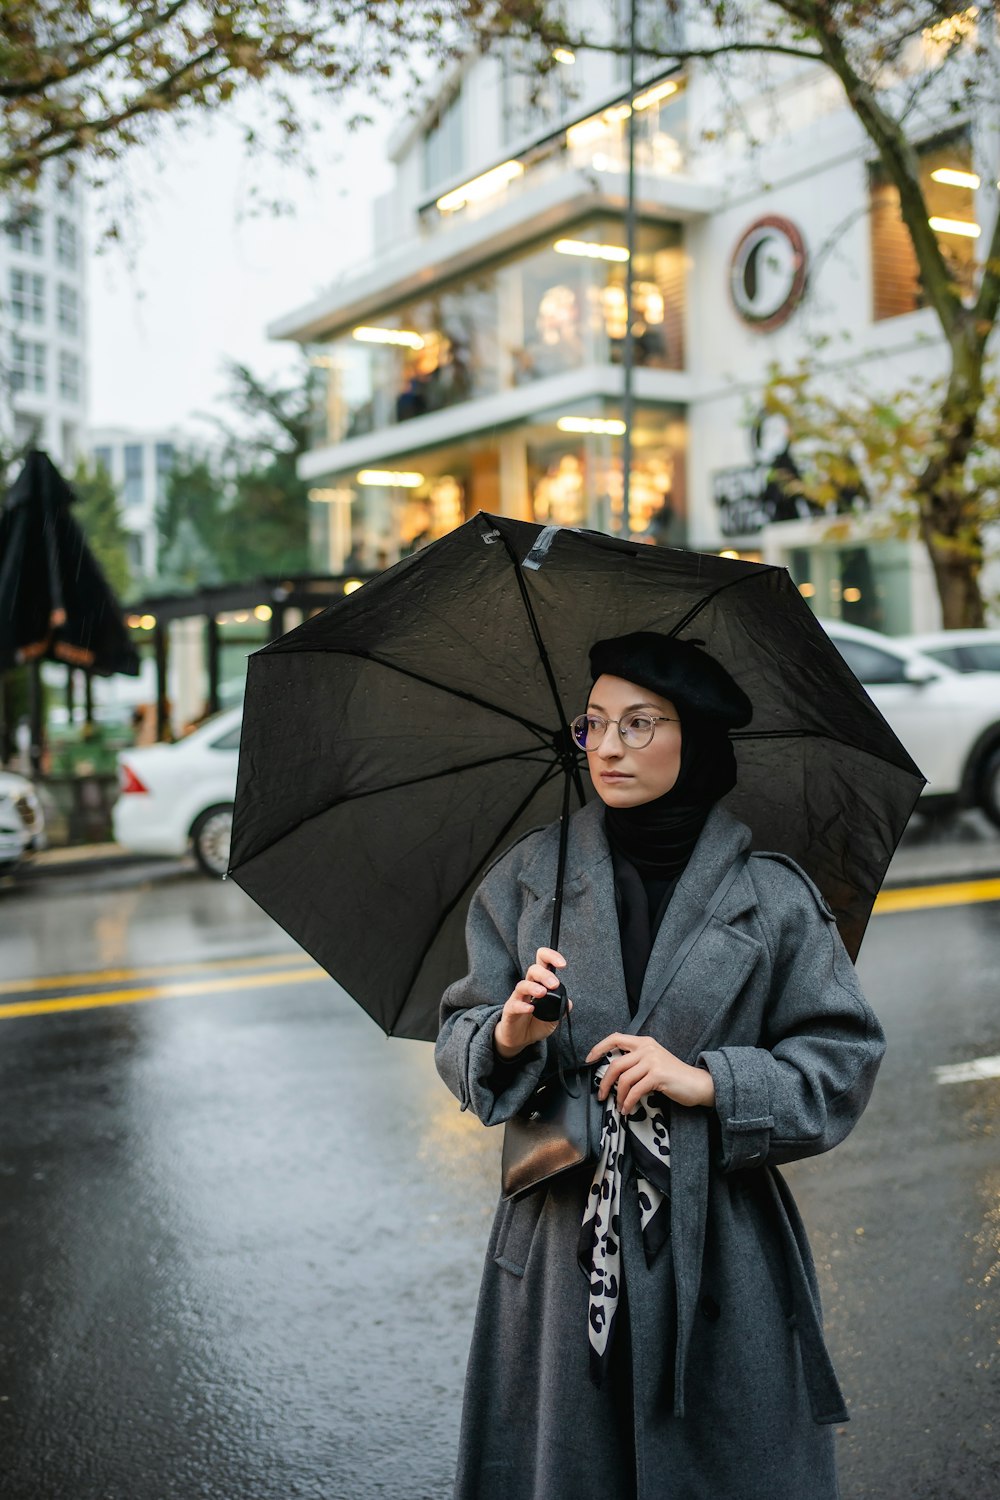 a woman standing on a street holding an umbrella